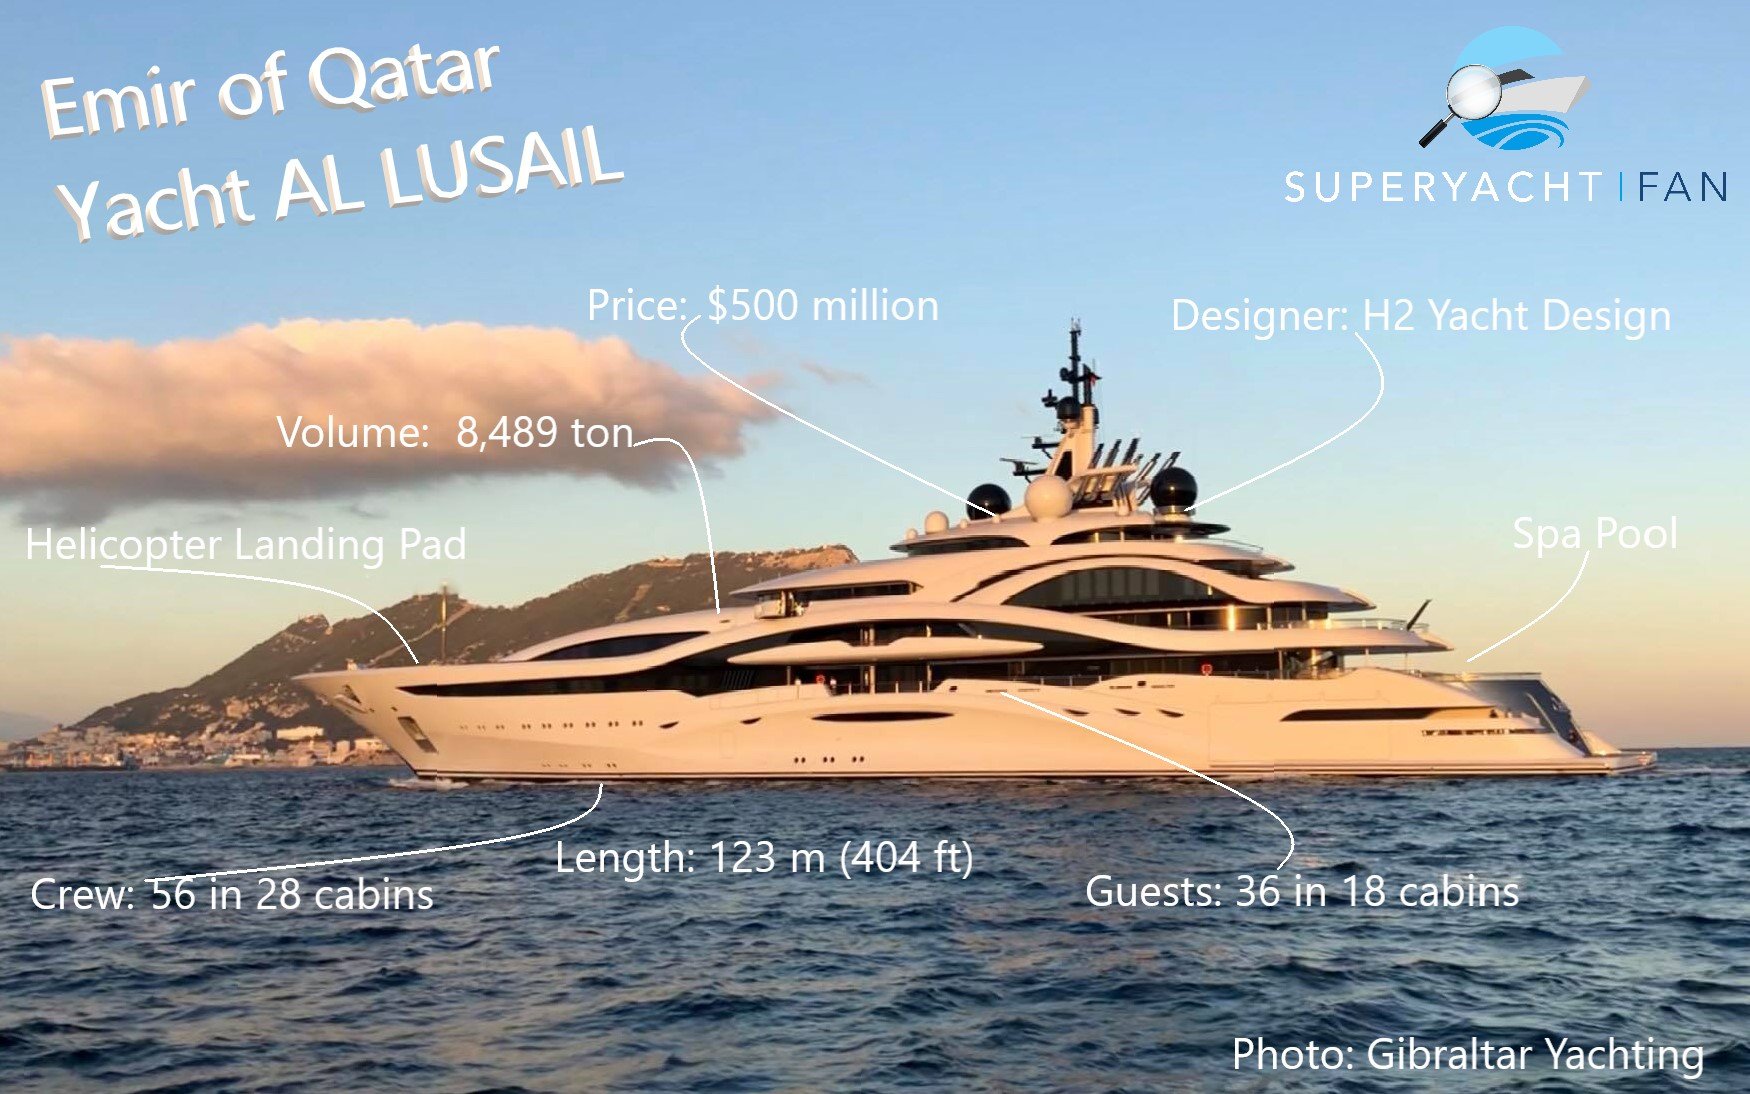 Emiro del Qatar Yacht AL LUSAIL